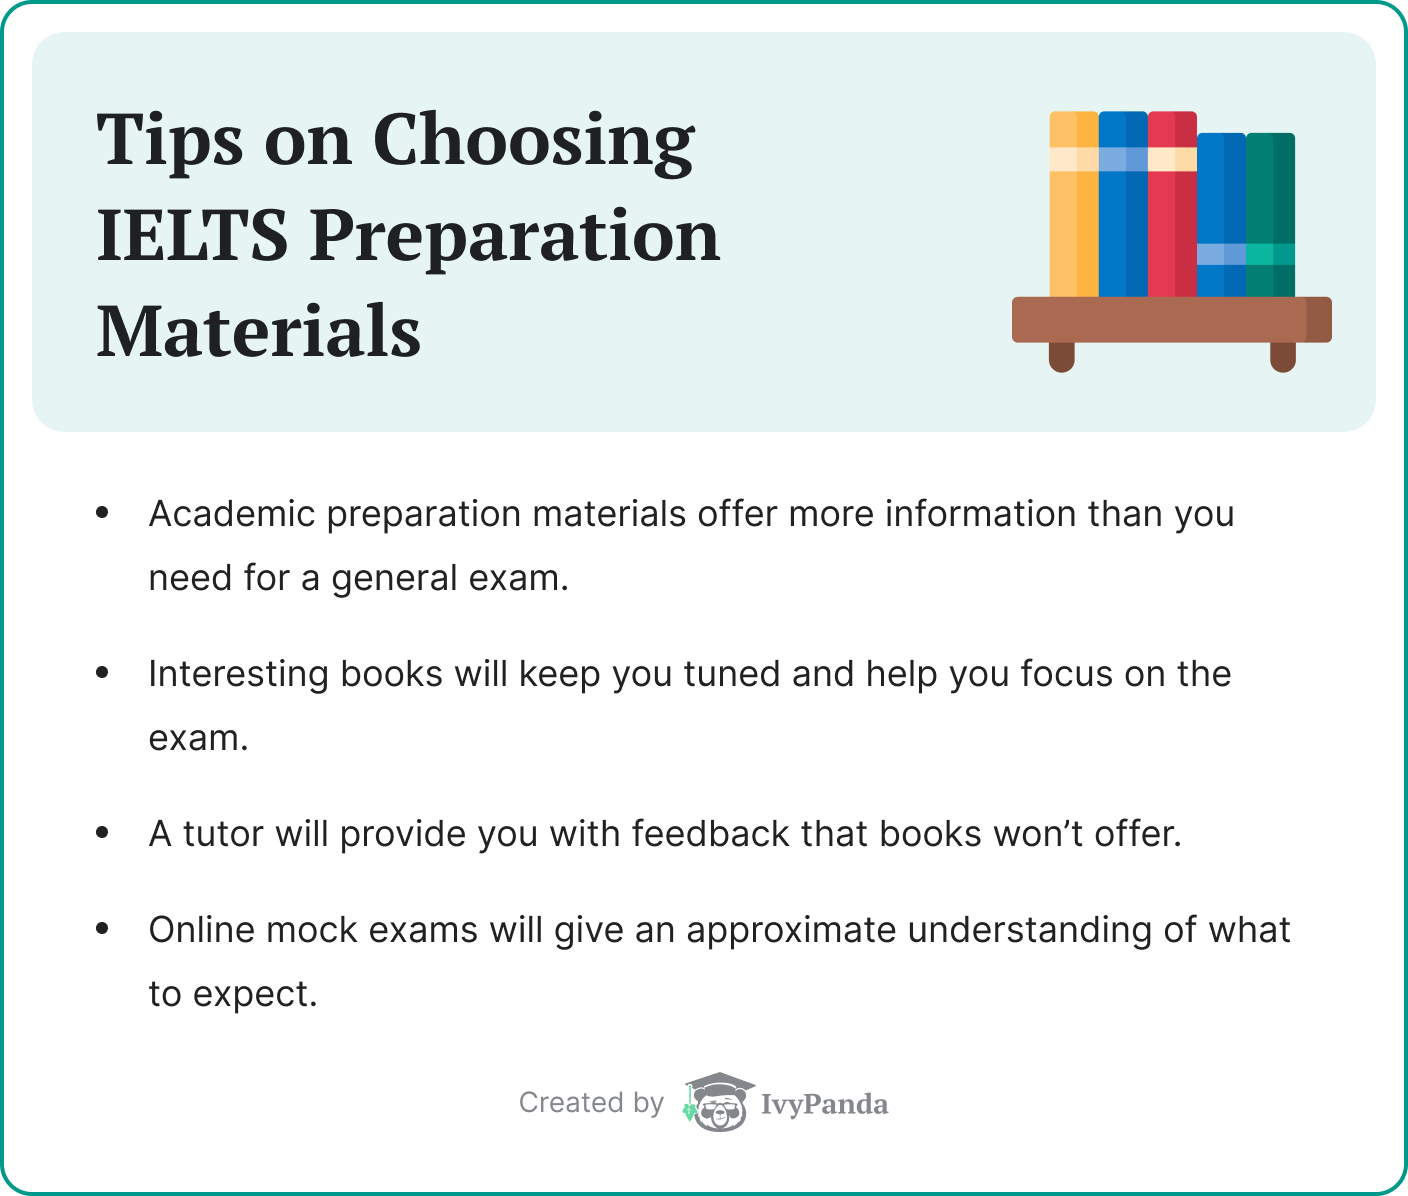 Tips on choosing IELTS preparation materials.